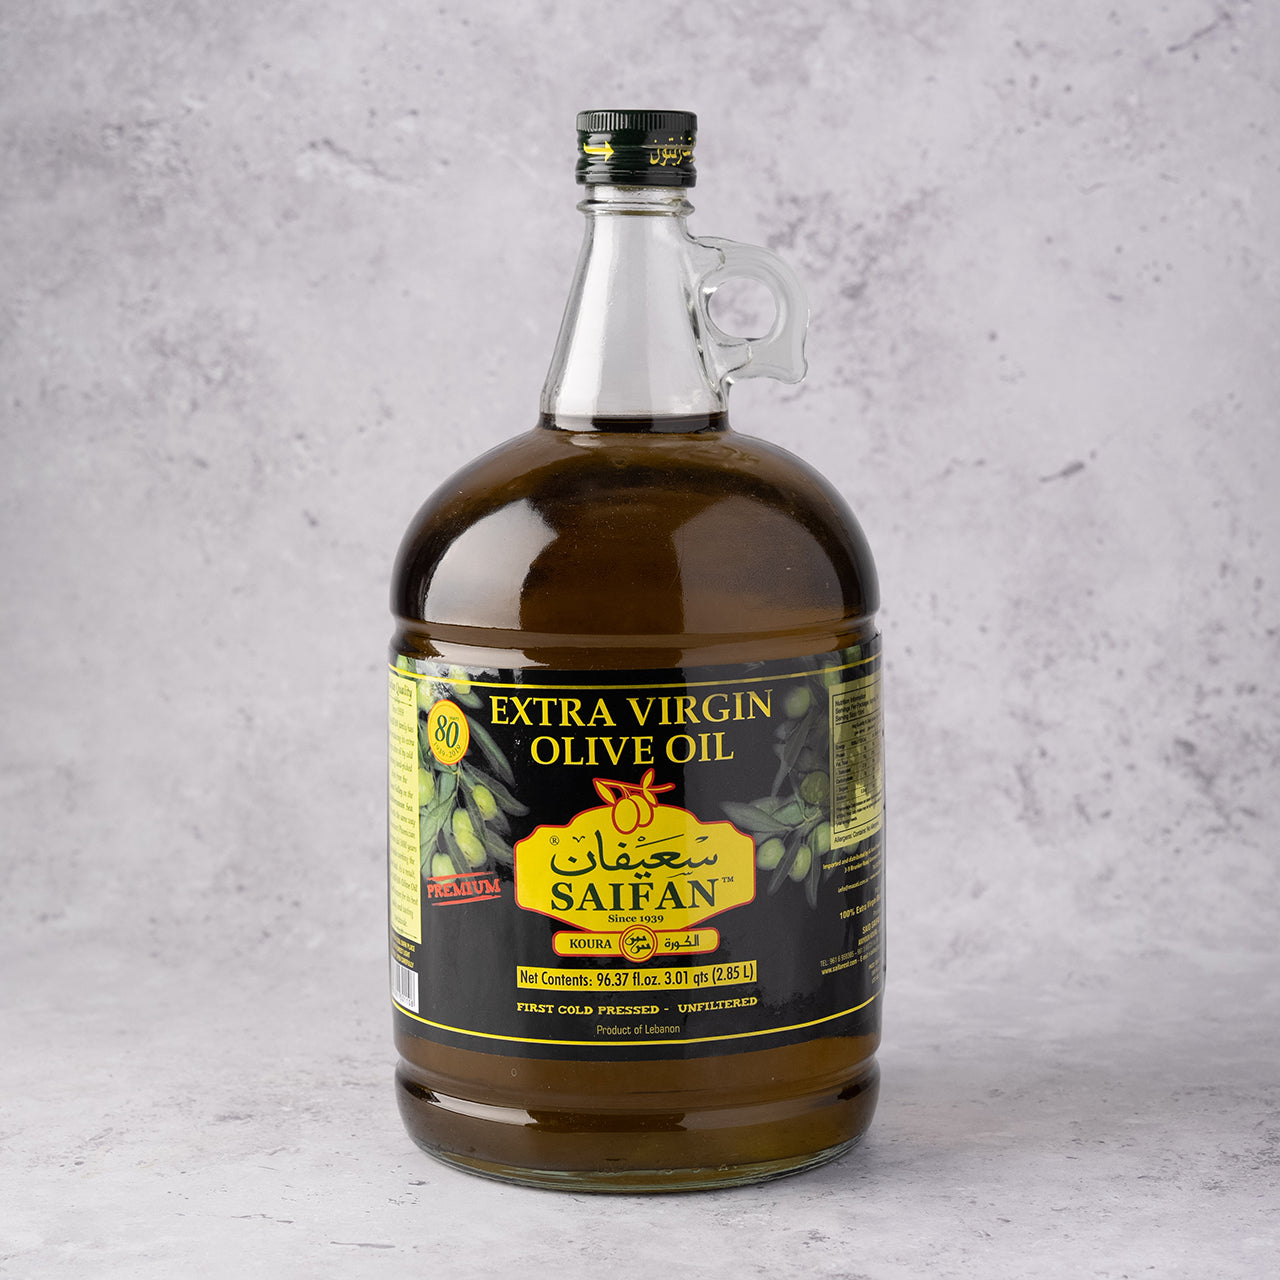 Saifan Extra Virgin Olive Oil 2.85L